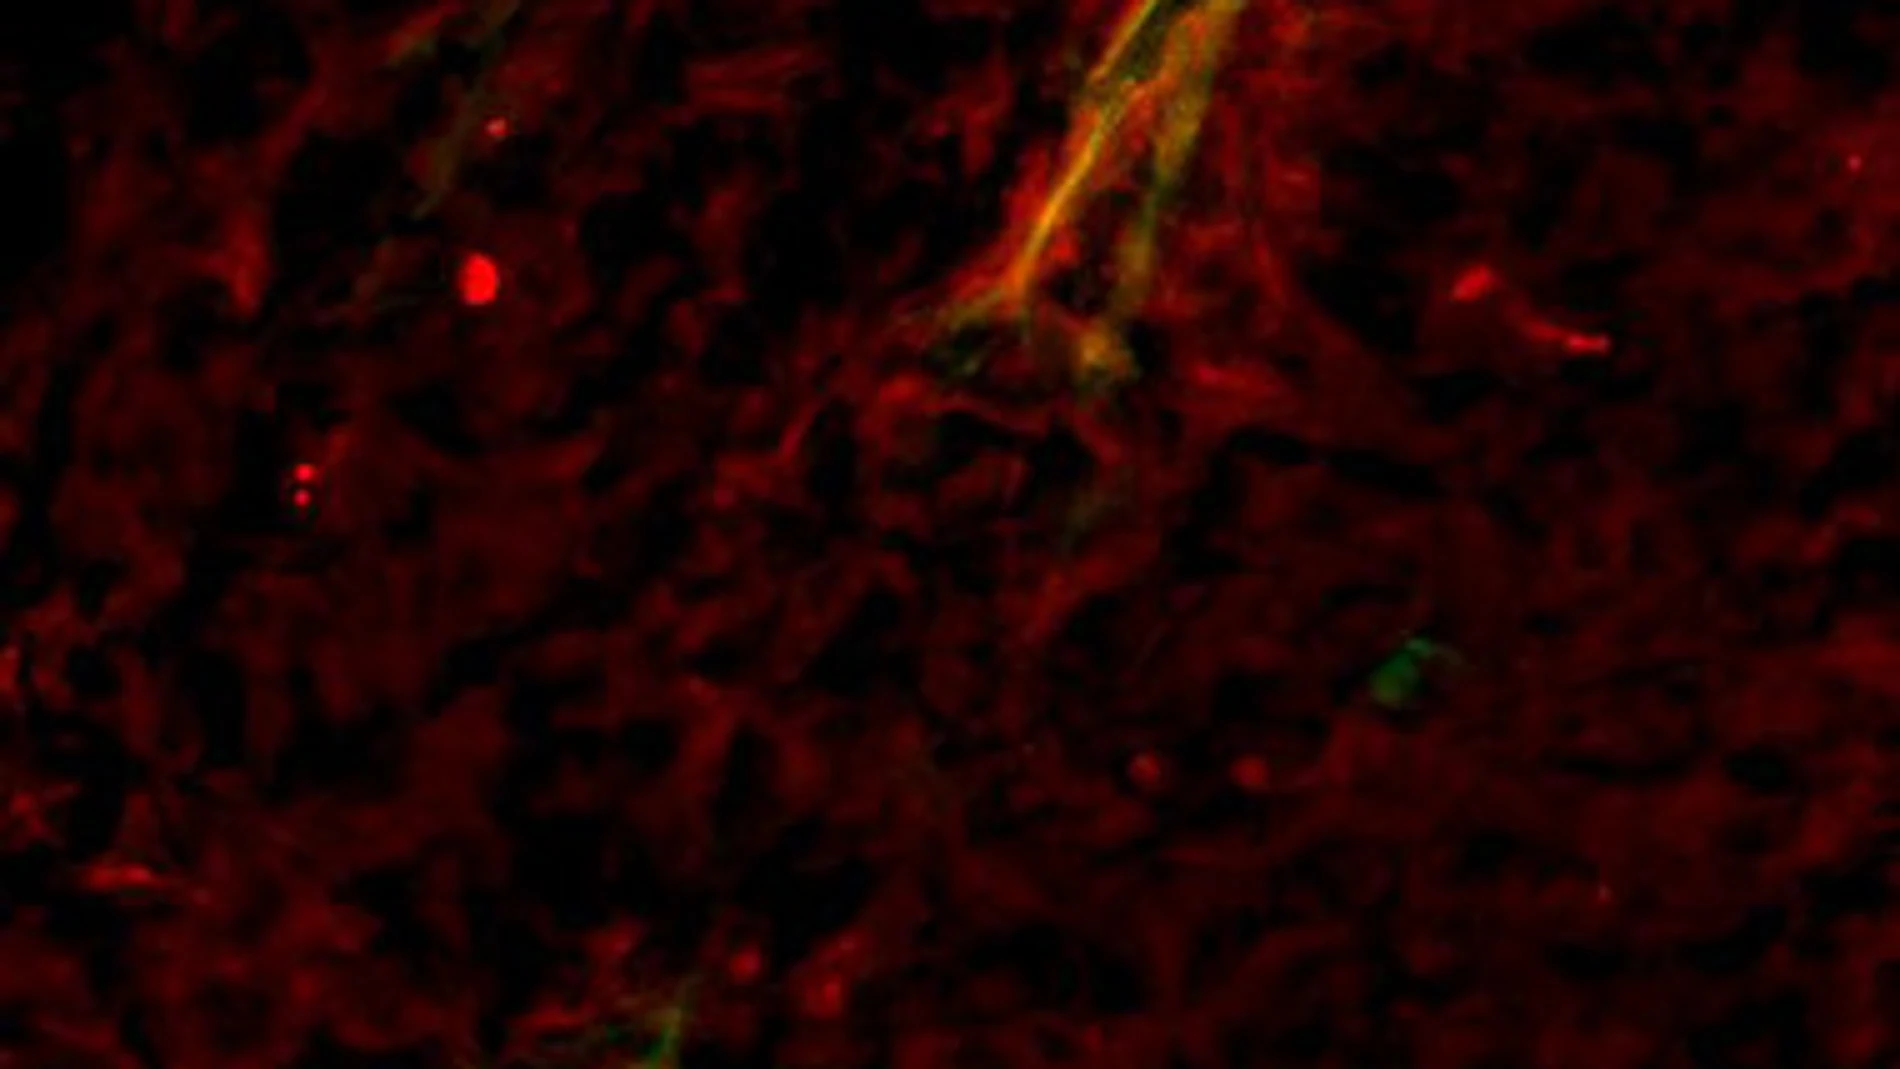 Detección de óxido nítrico (en rojo) cerca de los vasos sanguíneos (detectados mediante microangiografía; en verde) que irrigan un tumor, tras aumentar los niveles de SOD3. El amarillo indica la superposición de los dos colores